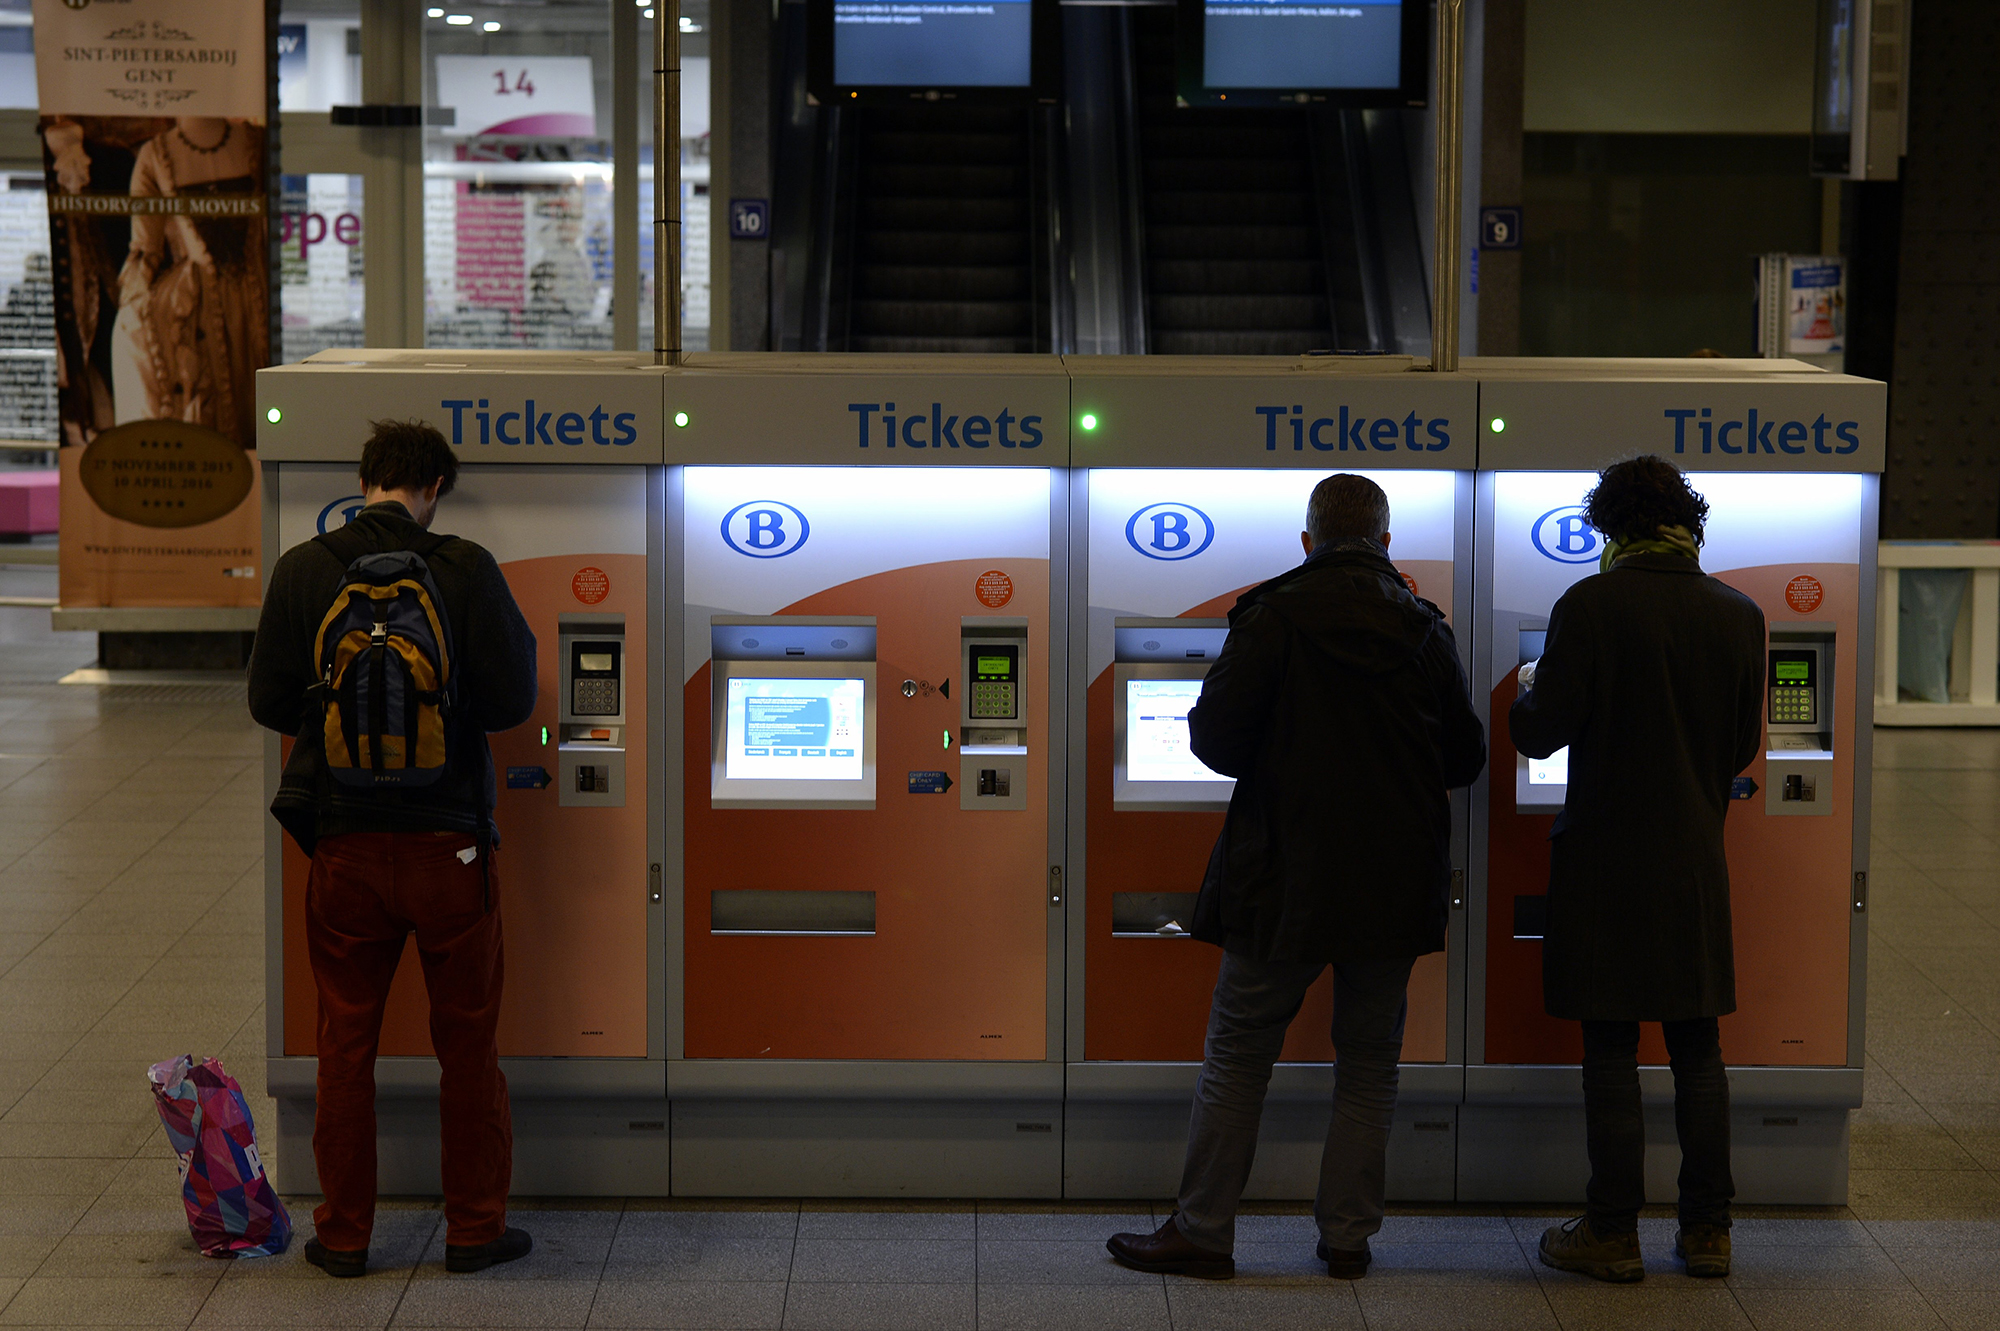 Zugpassagiere ziehen Tickets am Automaten